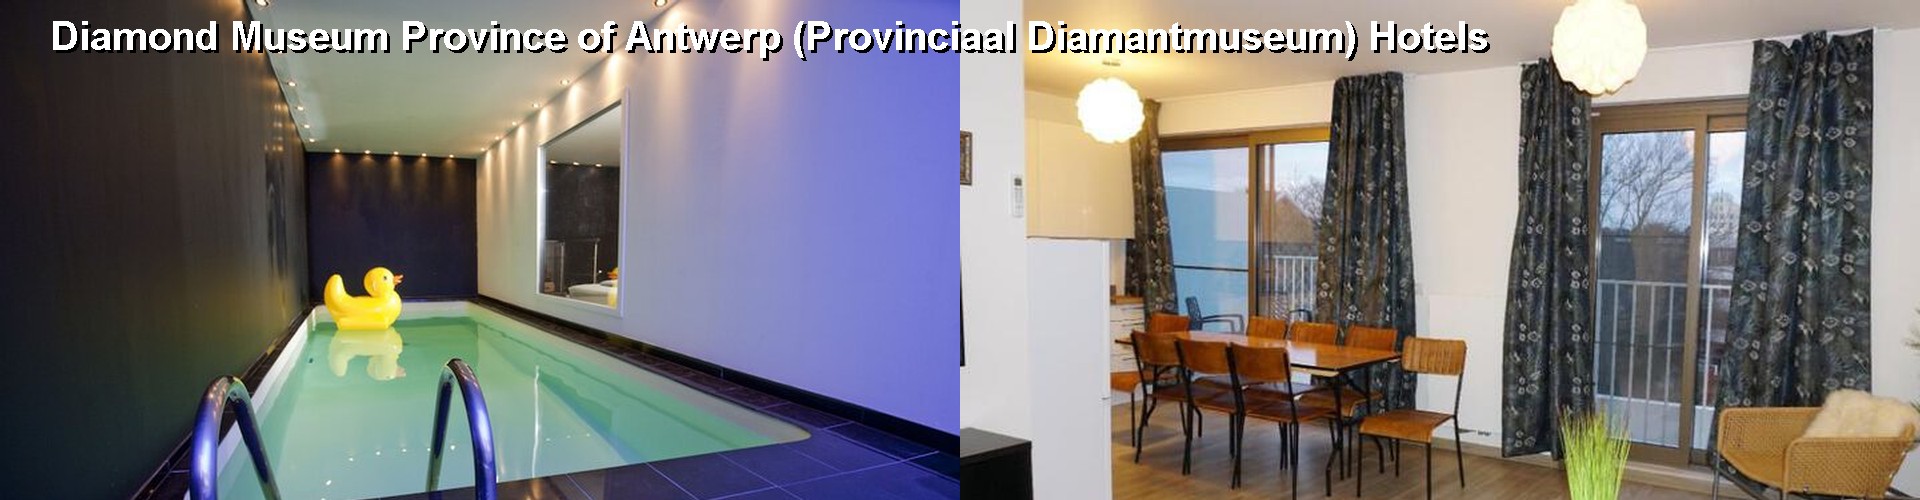 5 Best Hotels near Diamond Museum Province of Antwerp (Provinciaal Diamantmuseum)